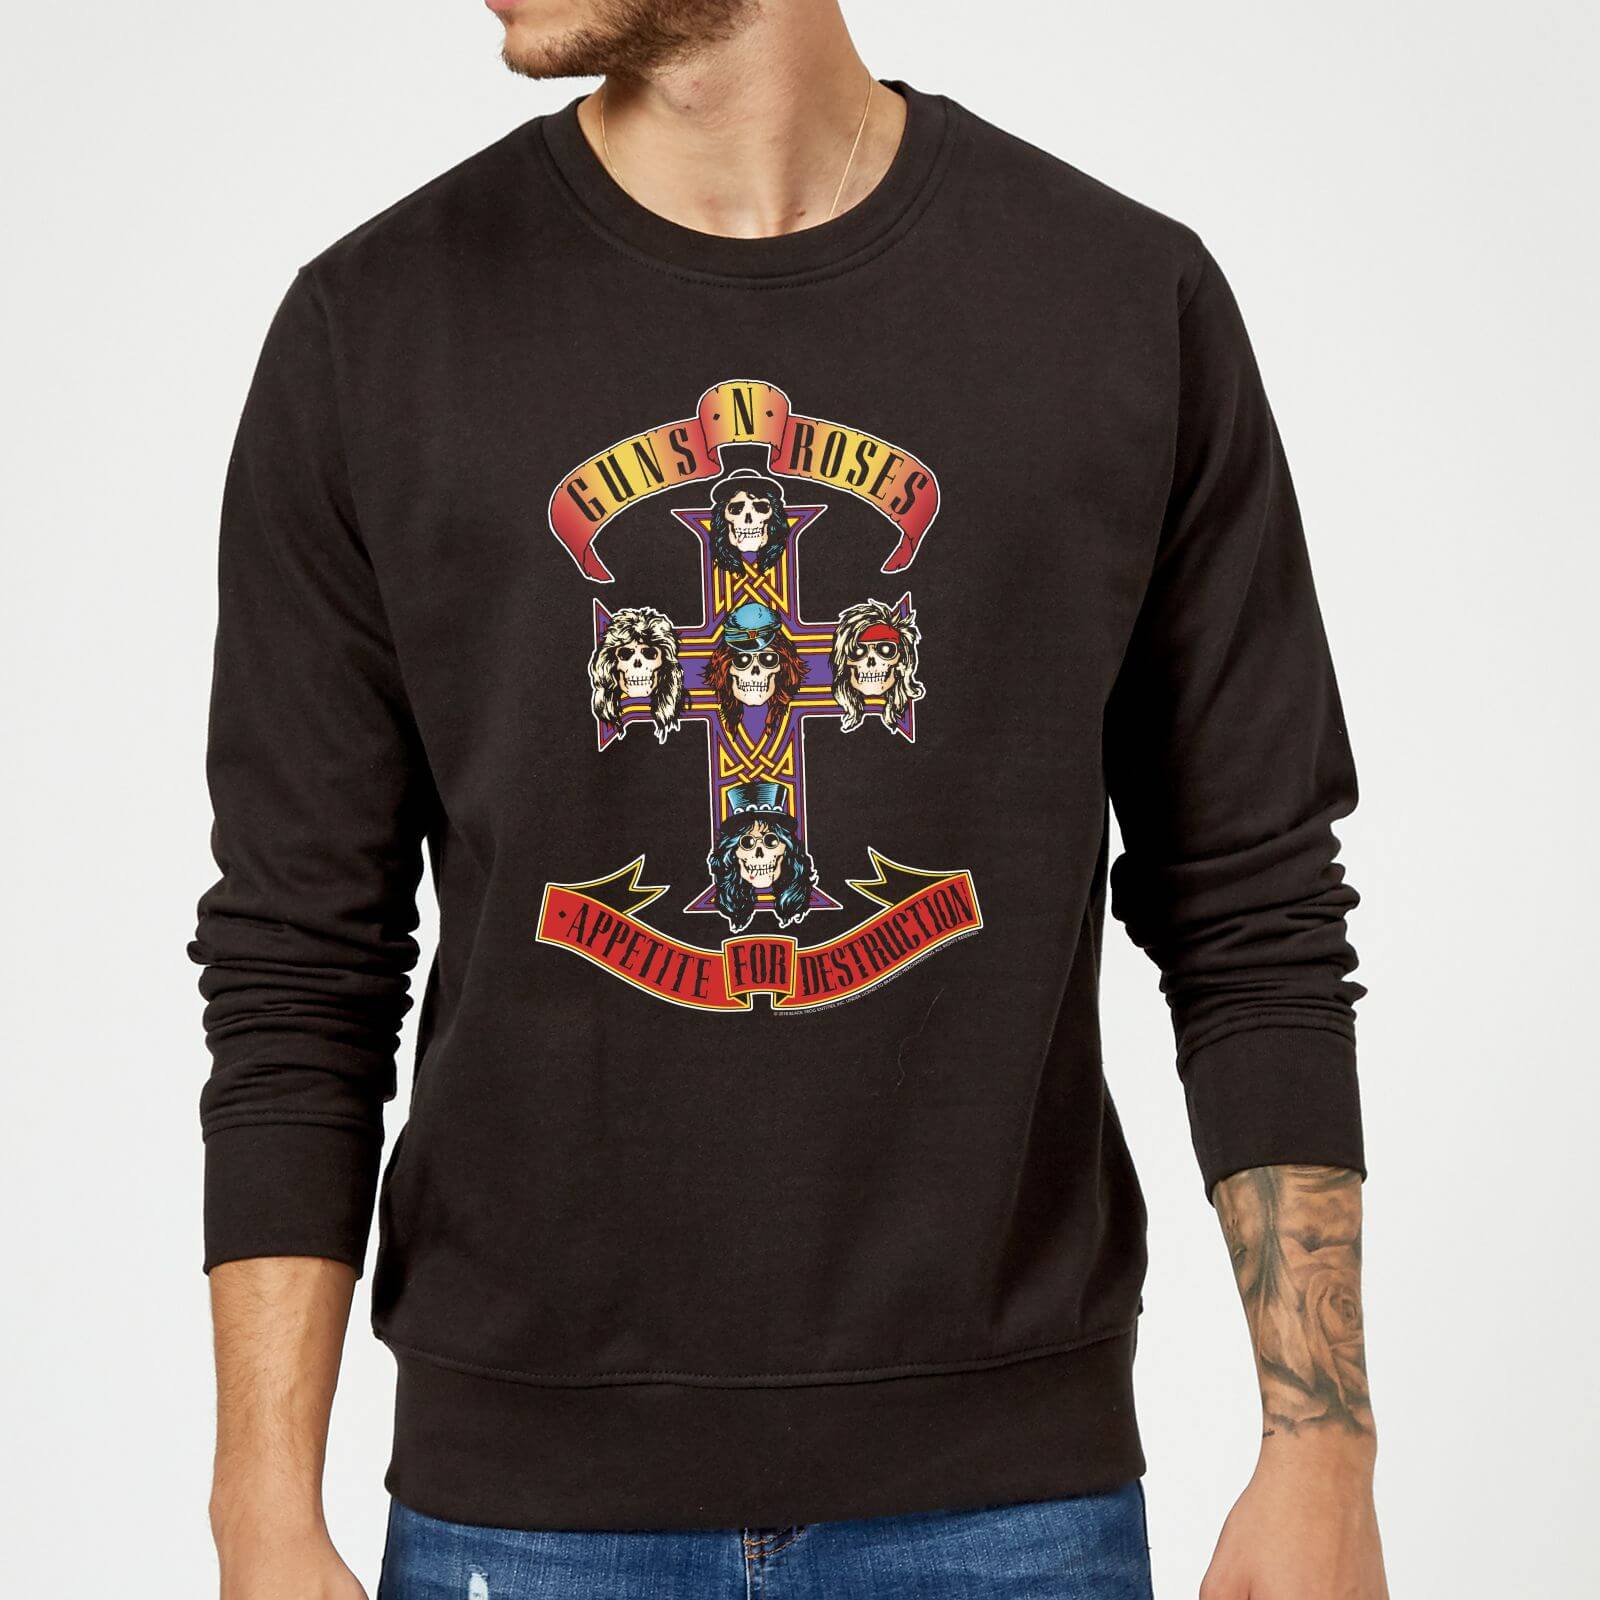 Guns N Roses Appetite For Destruction Sweatshirt - Black - S